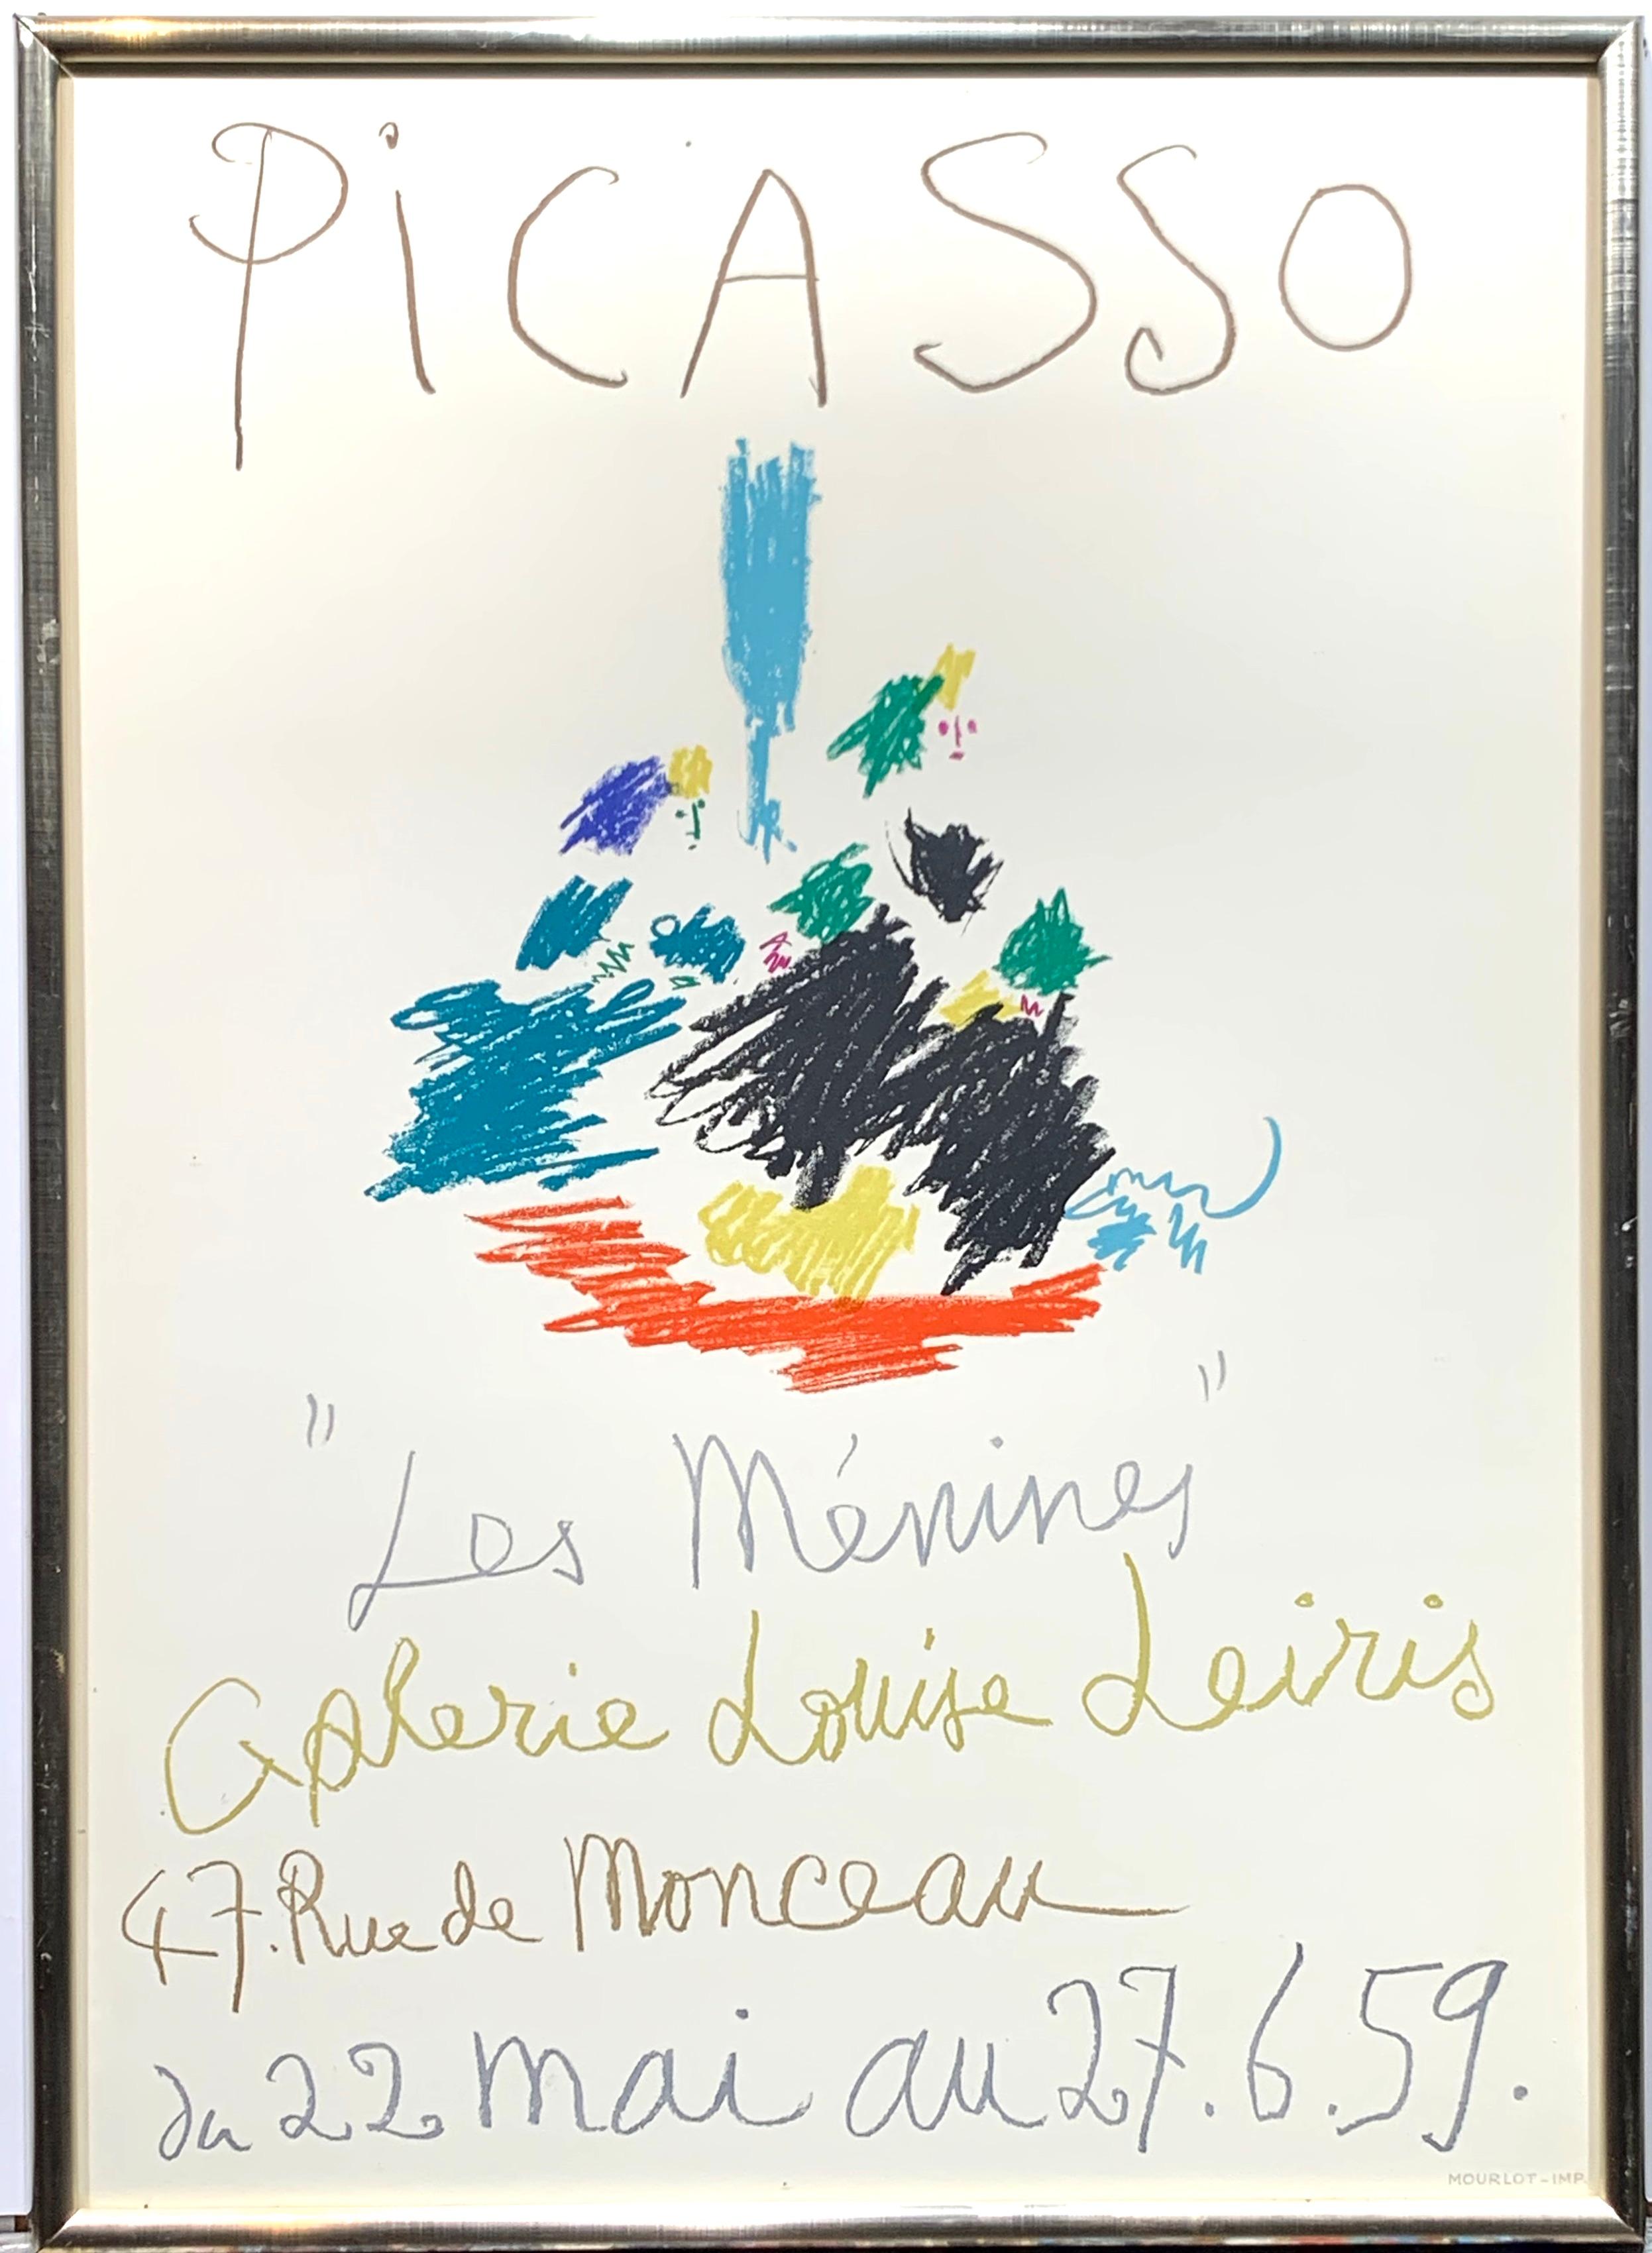 Pablo Picasso Print - Les Menines Mourlot Exhibition Poster